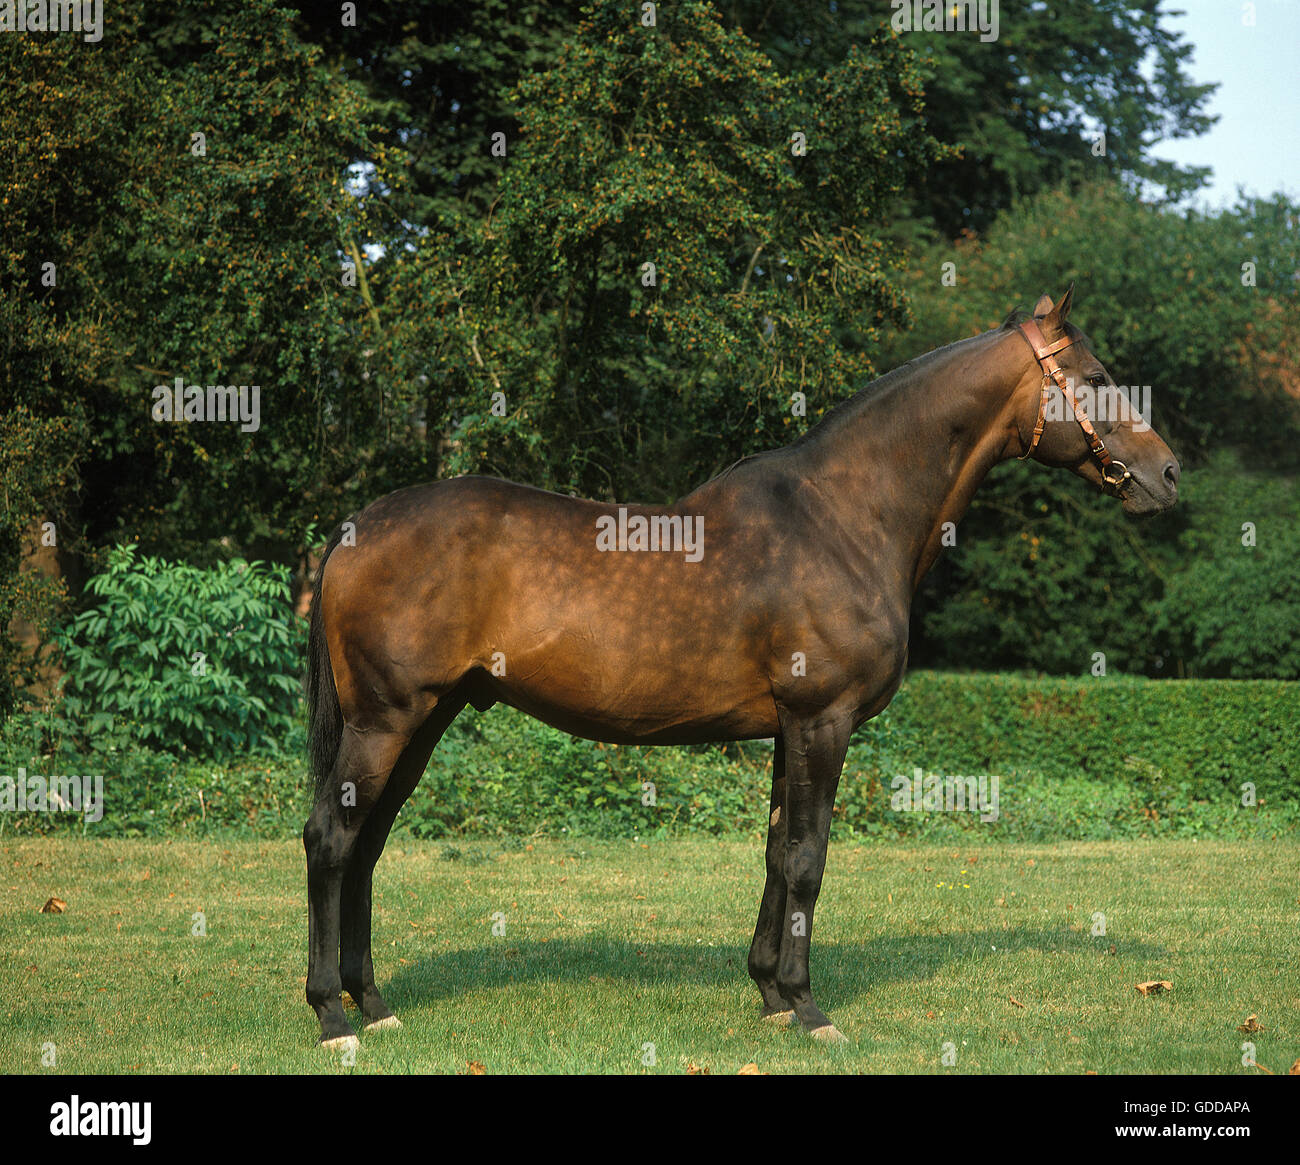 ARABIAN HORSE, STALLION Stock Photo